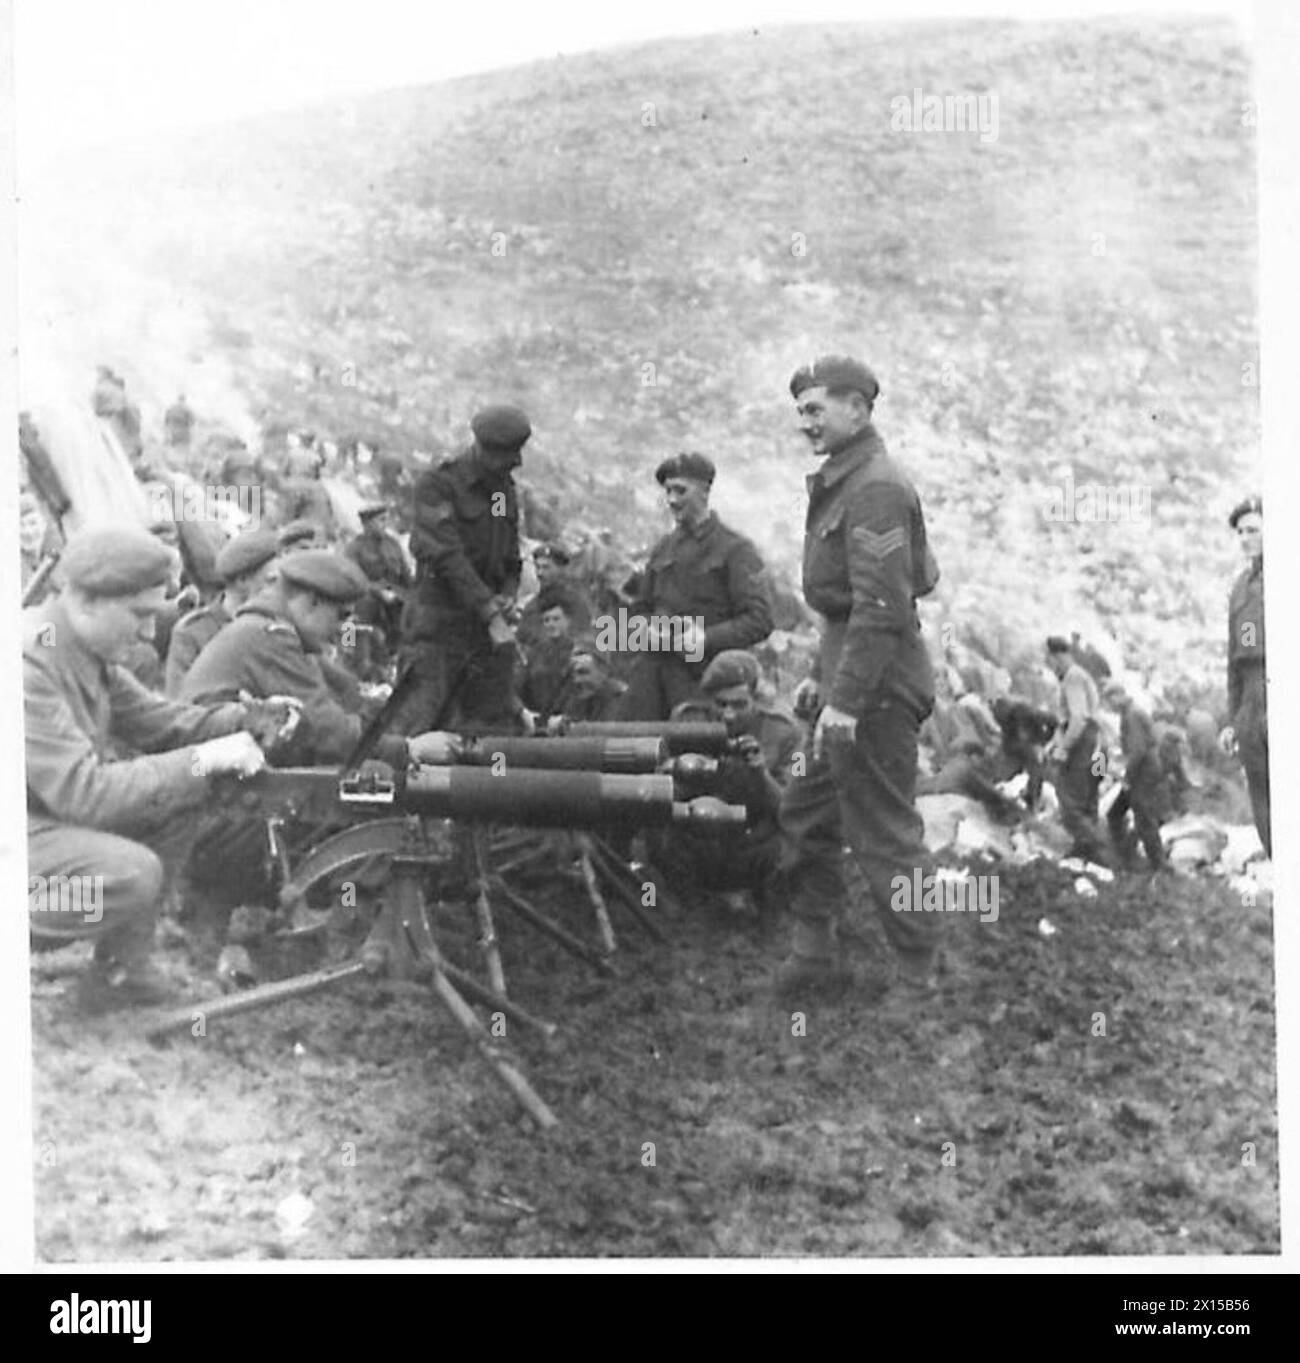 ITALIE : 5E ARMÉE (DIVERS) - hommes du 3ème Bn. Welsh Guards, 1st BTN. Garde la 6e division blindée, nettoyant leurs mitrailleuses Vickers avant qu'elles ne quittent l'armée britannique Banque D'Images